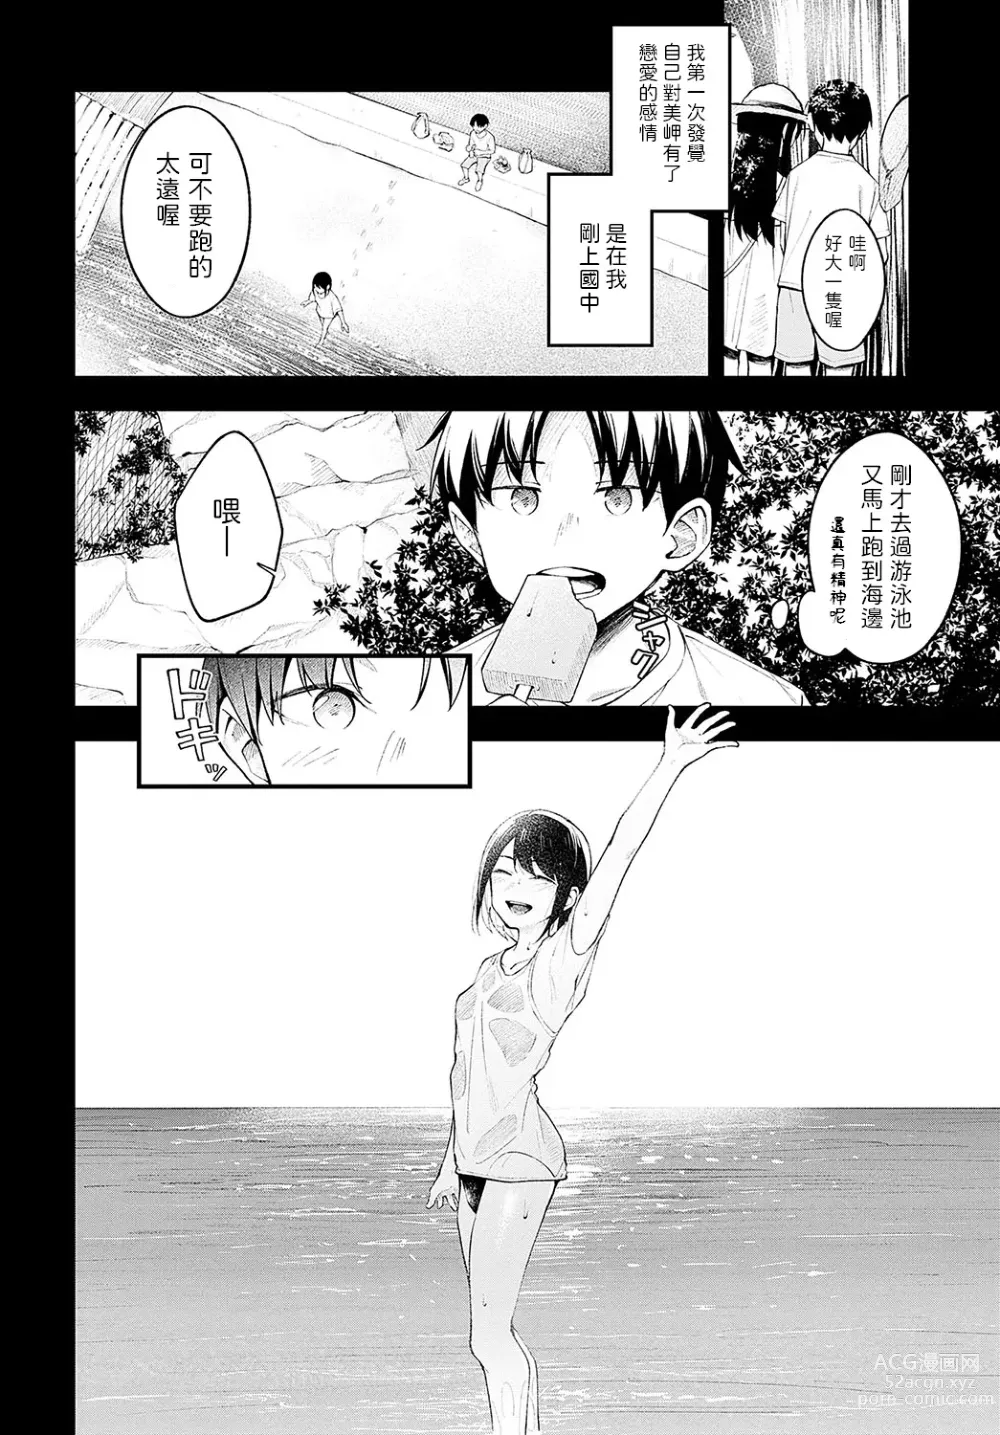 Page 4 of manga Kennetsu